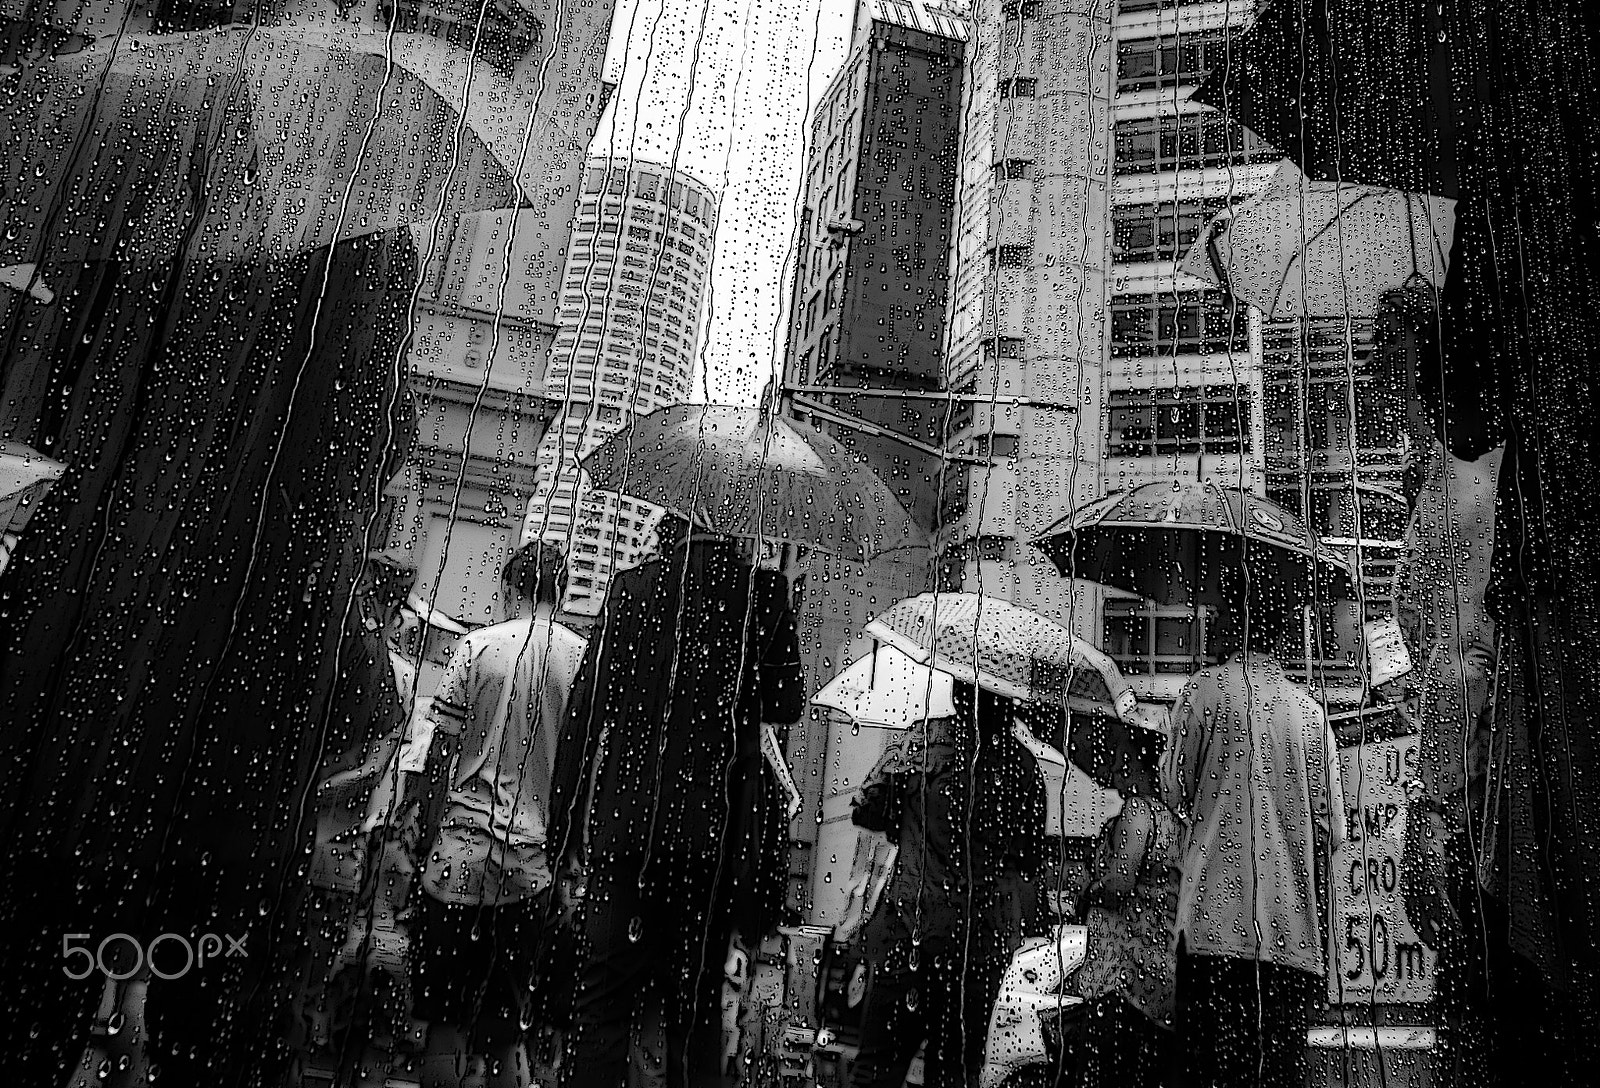 Canon EOS 70D + Sigma 24-105mm f/4 DG OS HSM | A sample photo. Umbrella parade. photography